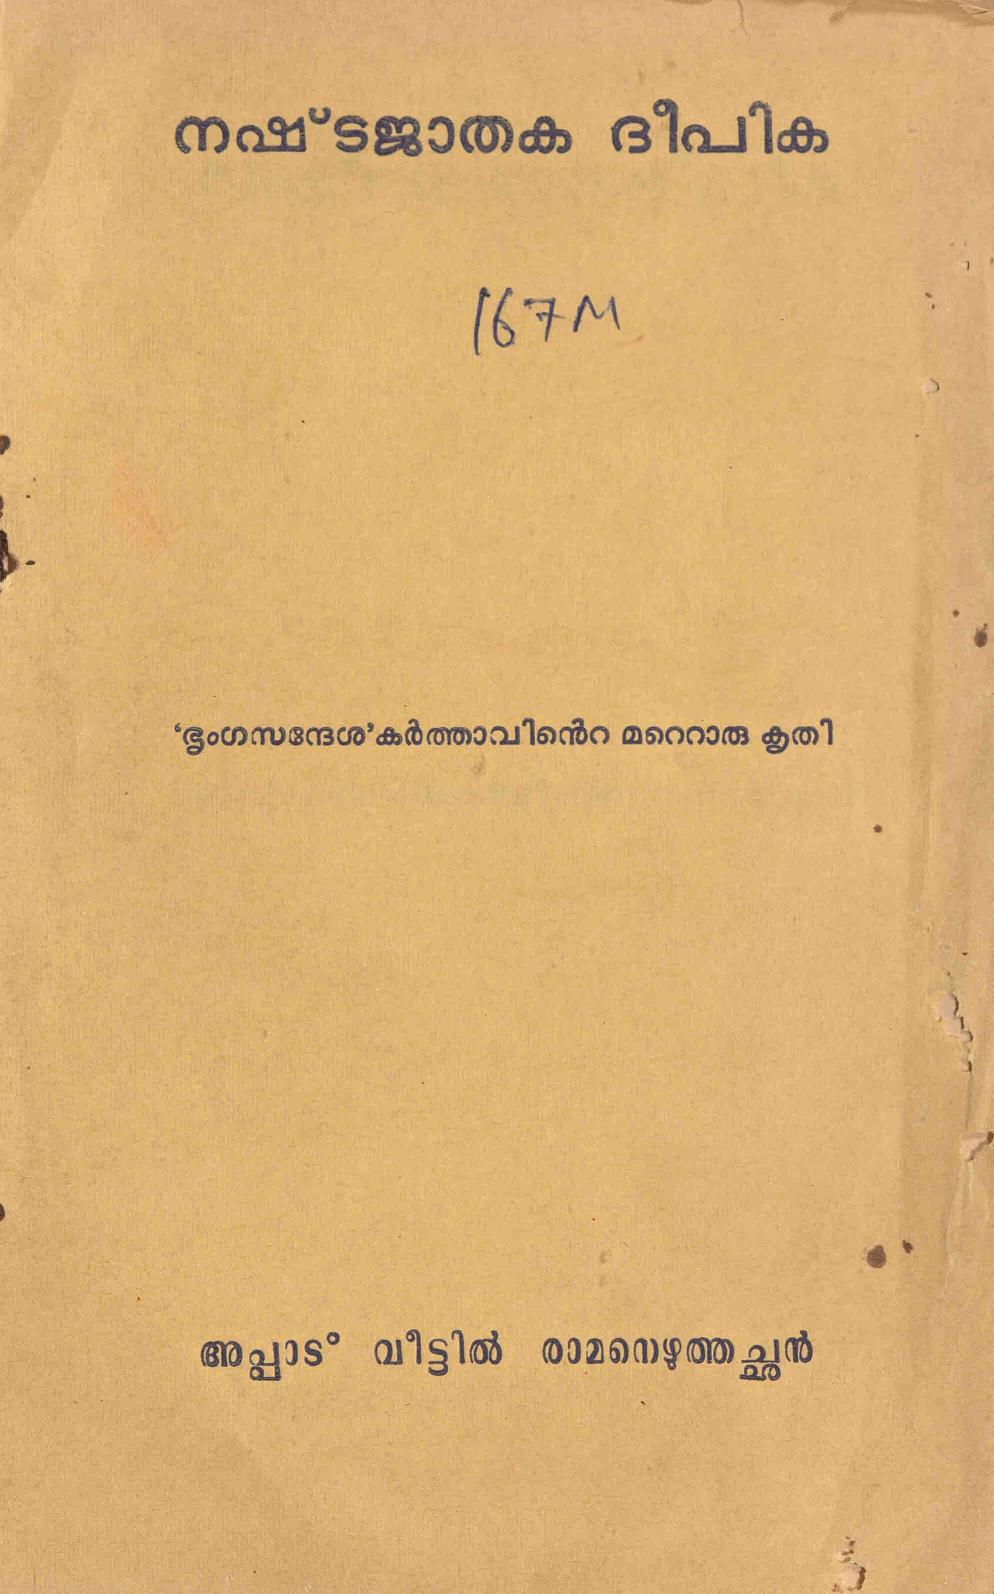 1974 - നഷ്ടജാതക ദീപിക - അപ്പാട് വീട്ടിൽ രാമനെഴുത്തച്ഛൻ - സി.കെ. മൂസ്സത്